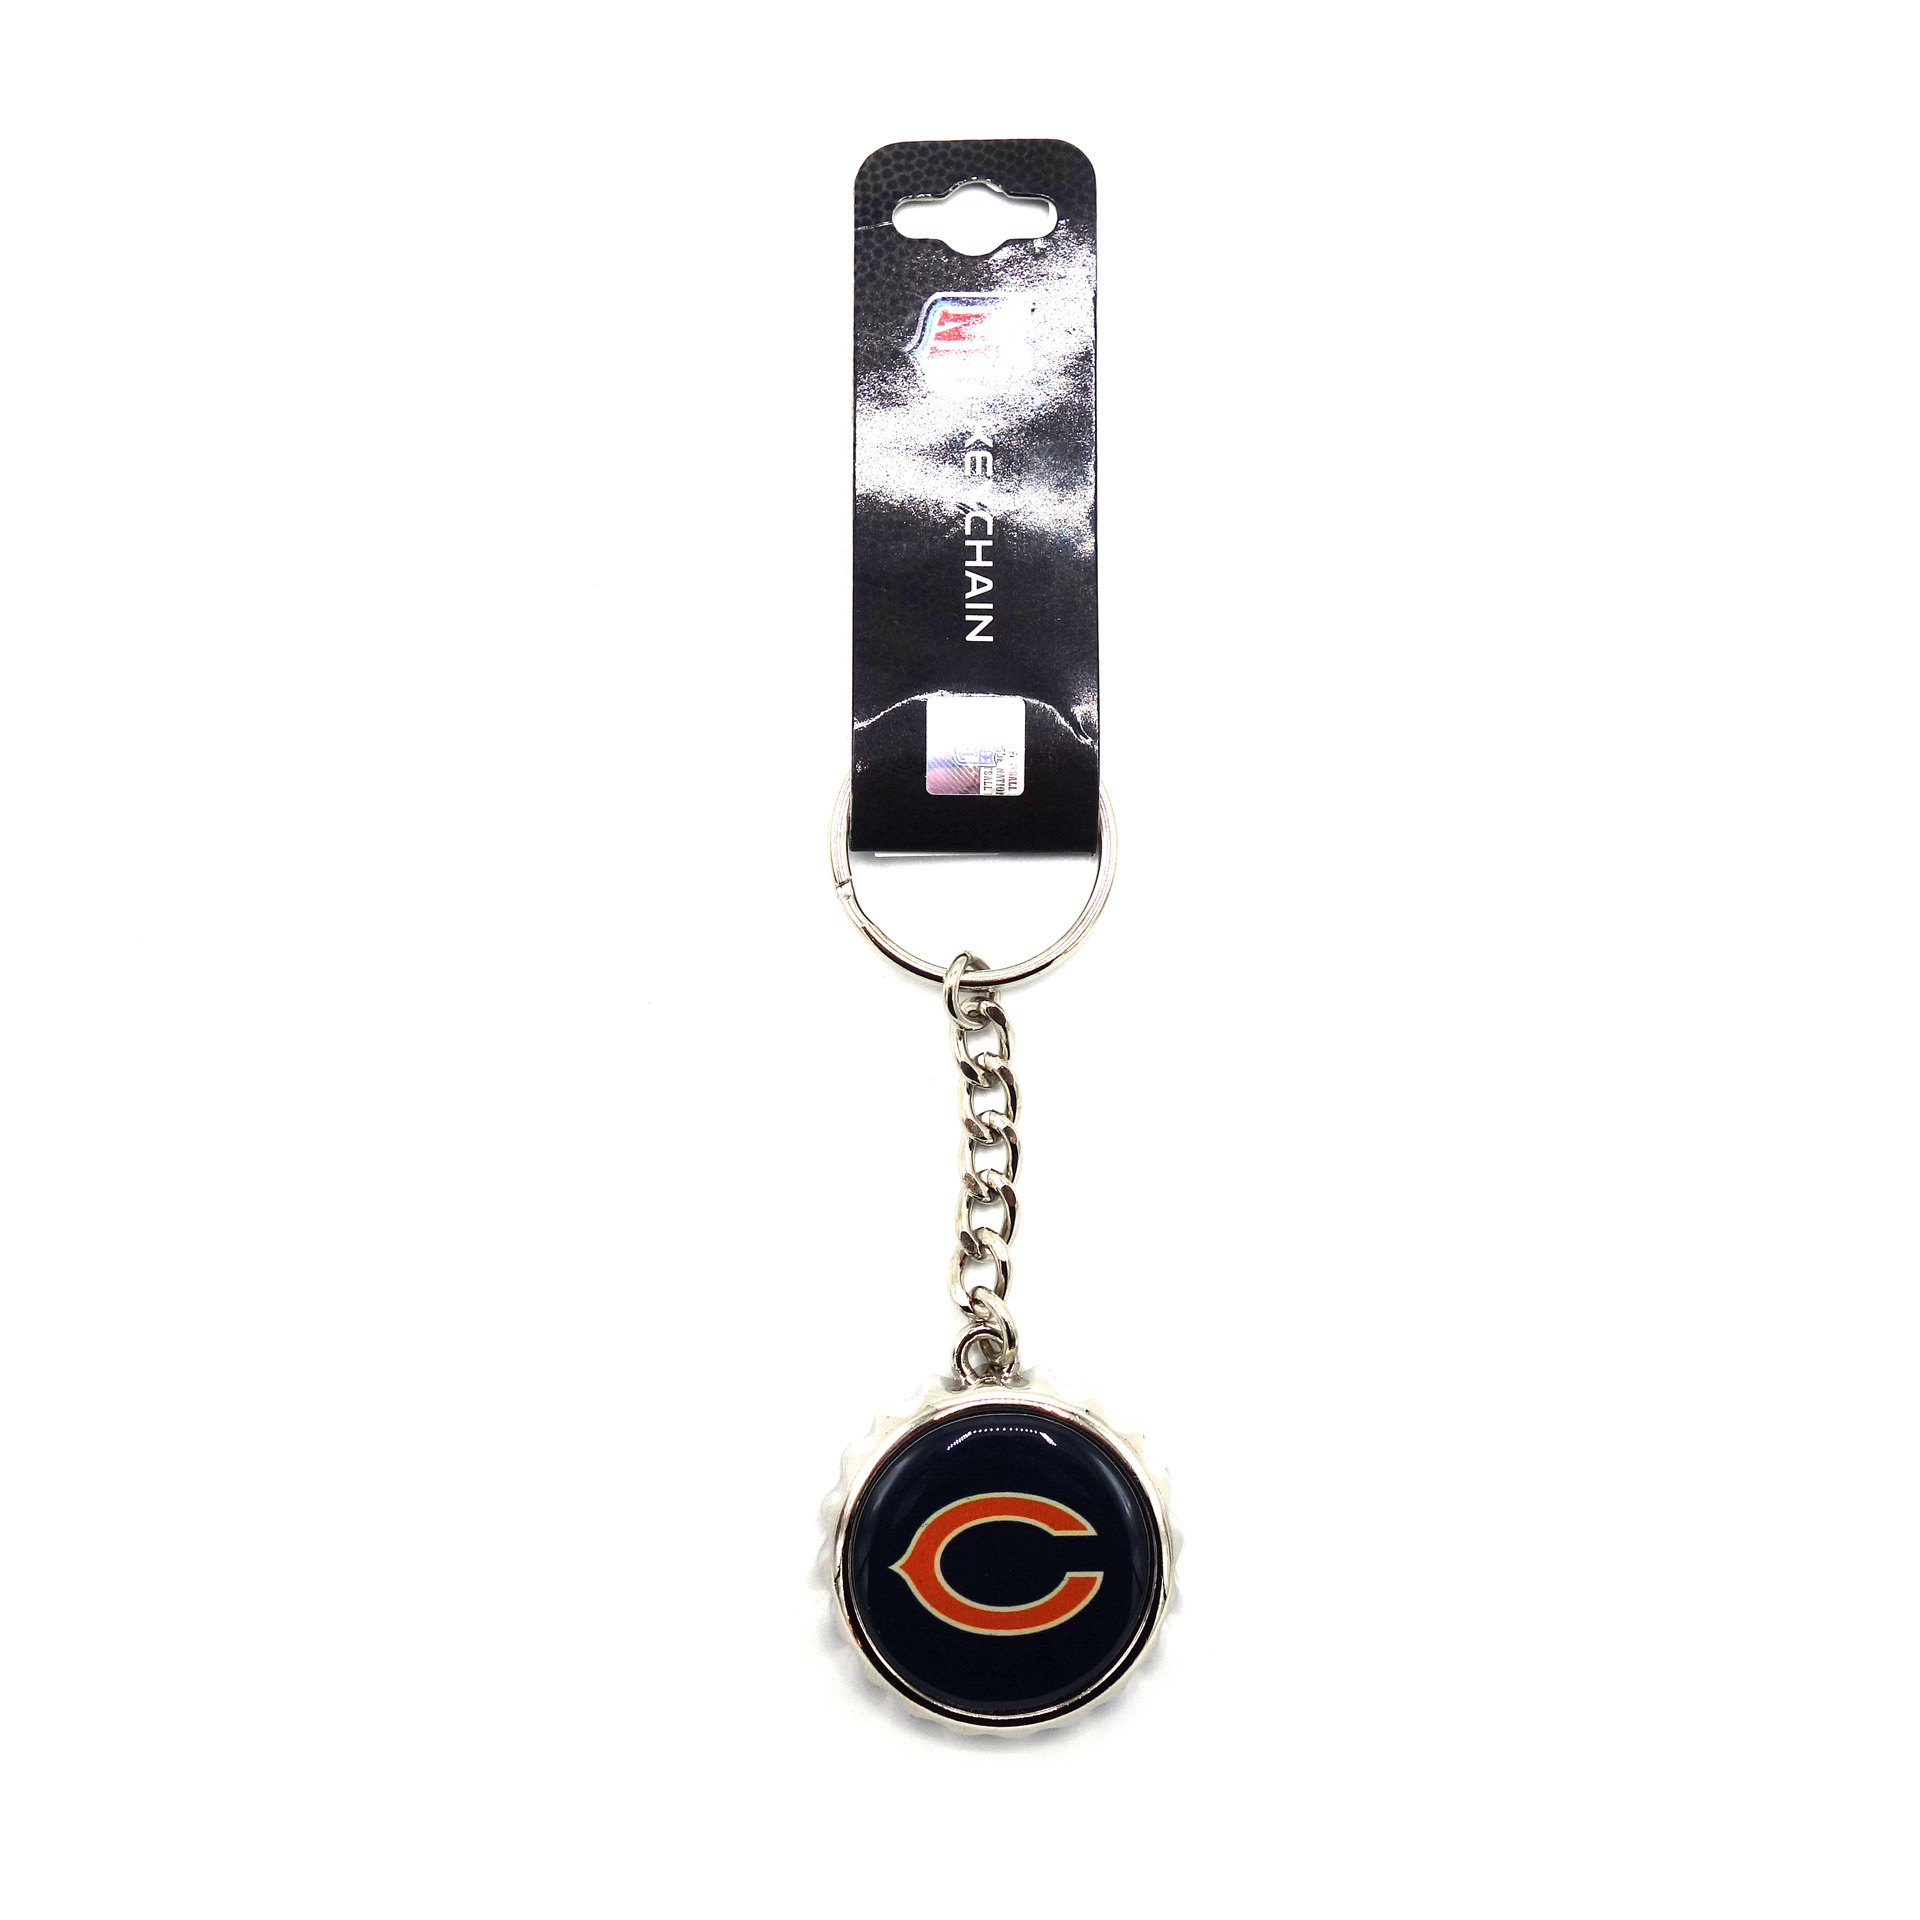 NFL Kronkorken Schlüsselanhänger Chicago Bears Flaschenöffner  